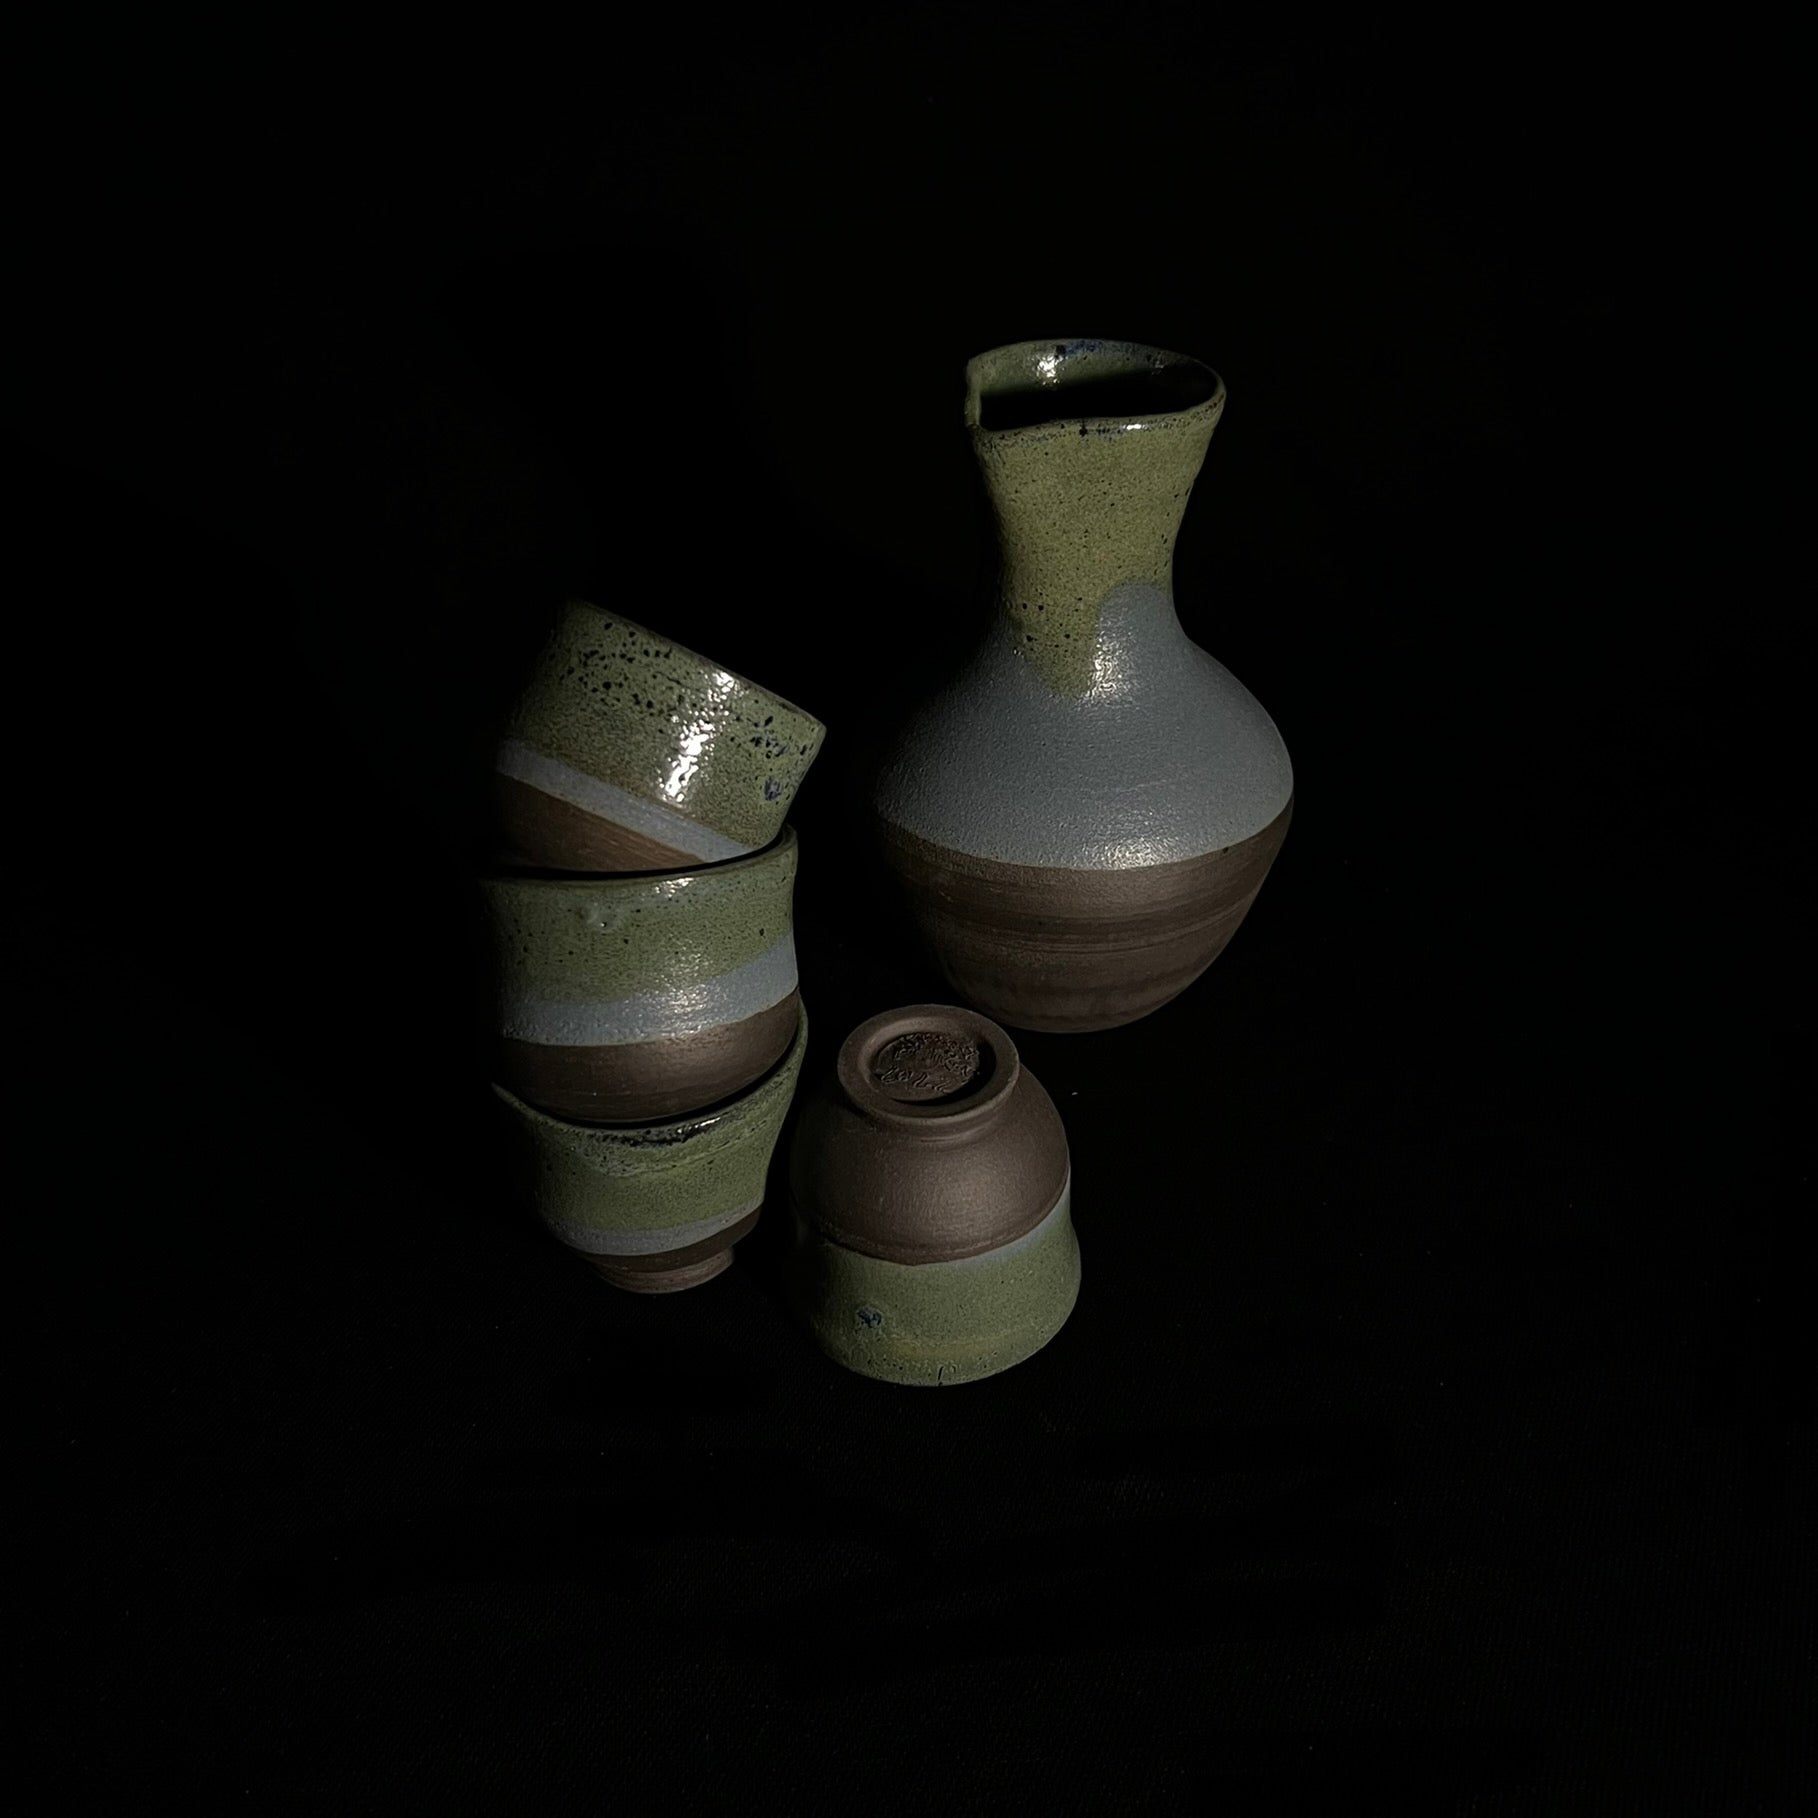 Handmade Japanese Sake Set, Pottery Sake Set, Unique Sake Set